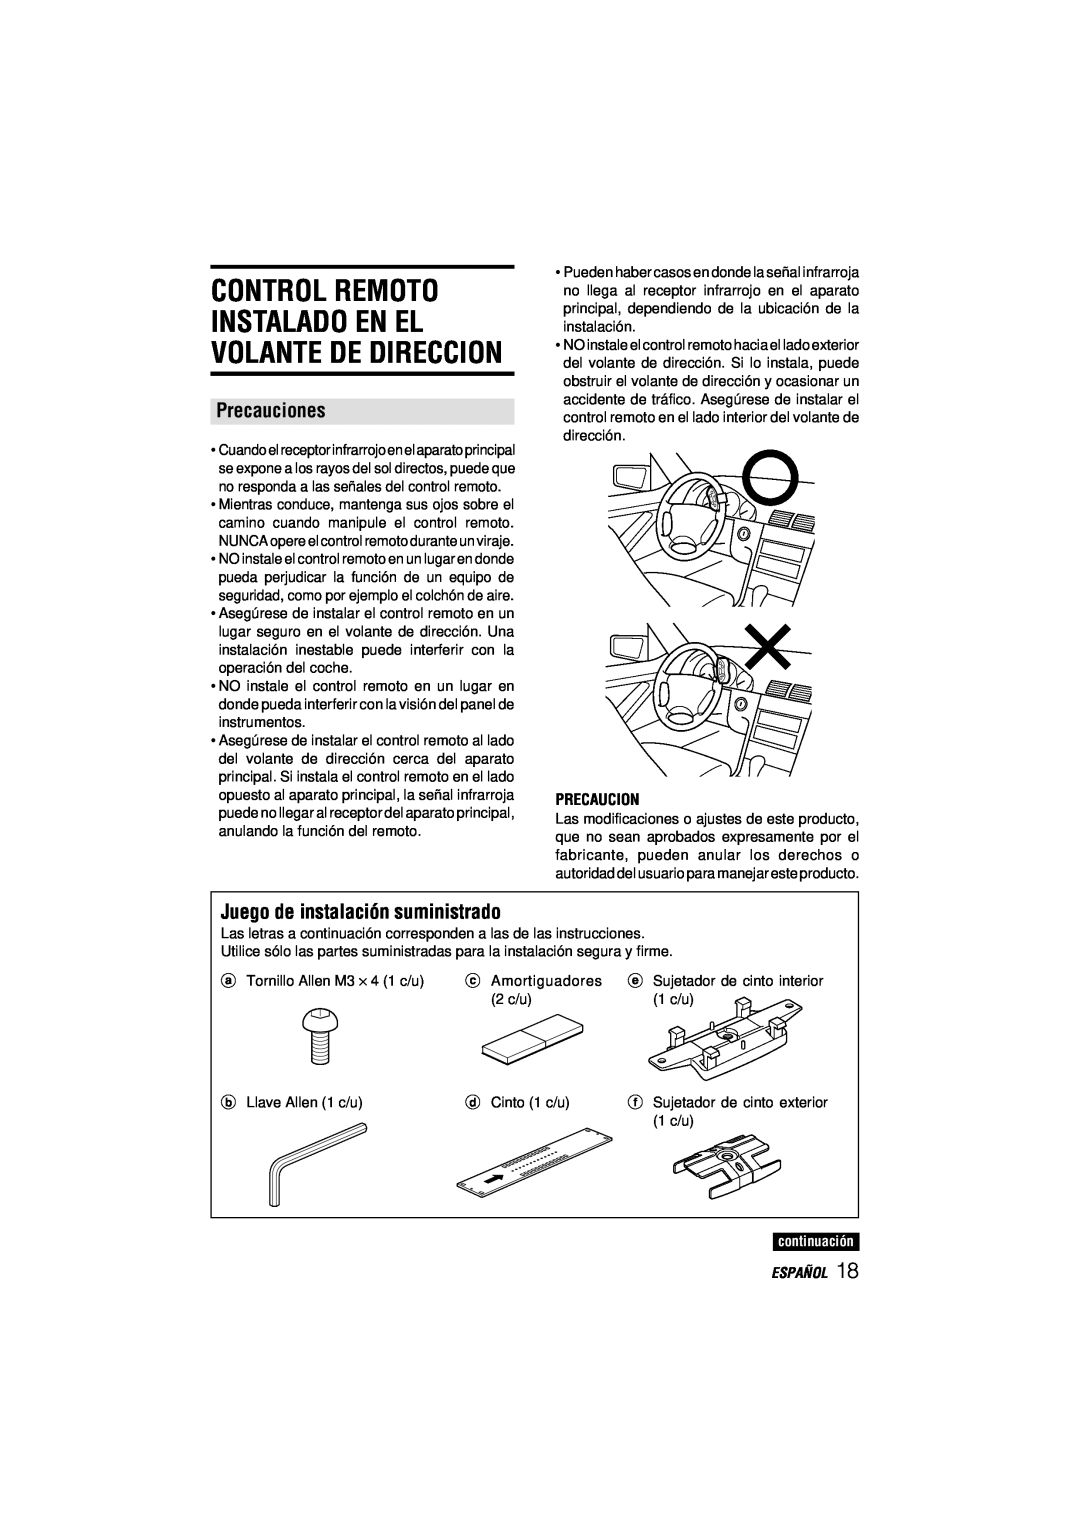 Aiwa CDC-MP3 manual Control Remoto, Instalado En El Volante De Direccion, Precauciones, Juego de instalación suministrado 